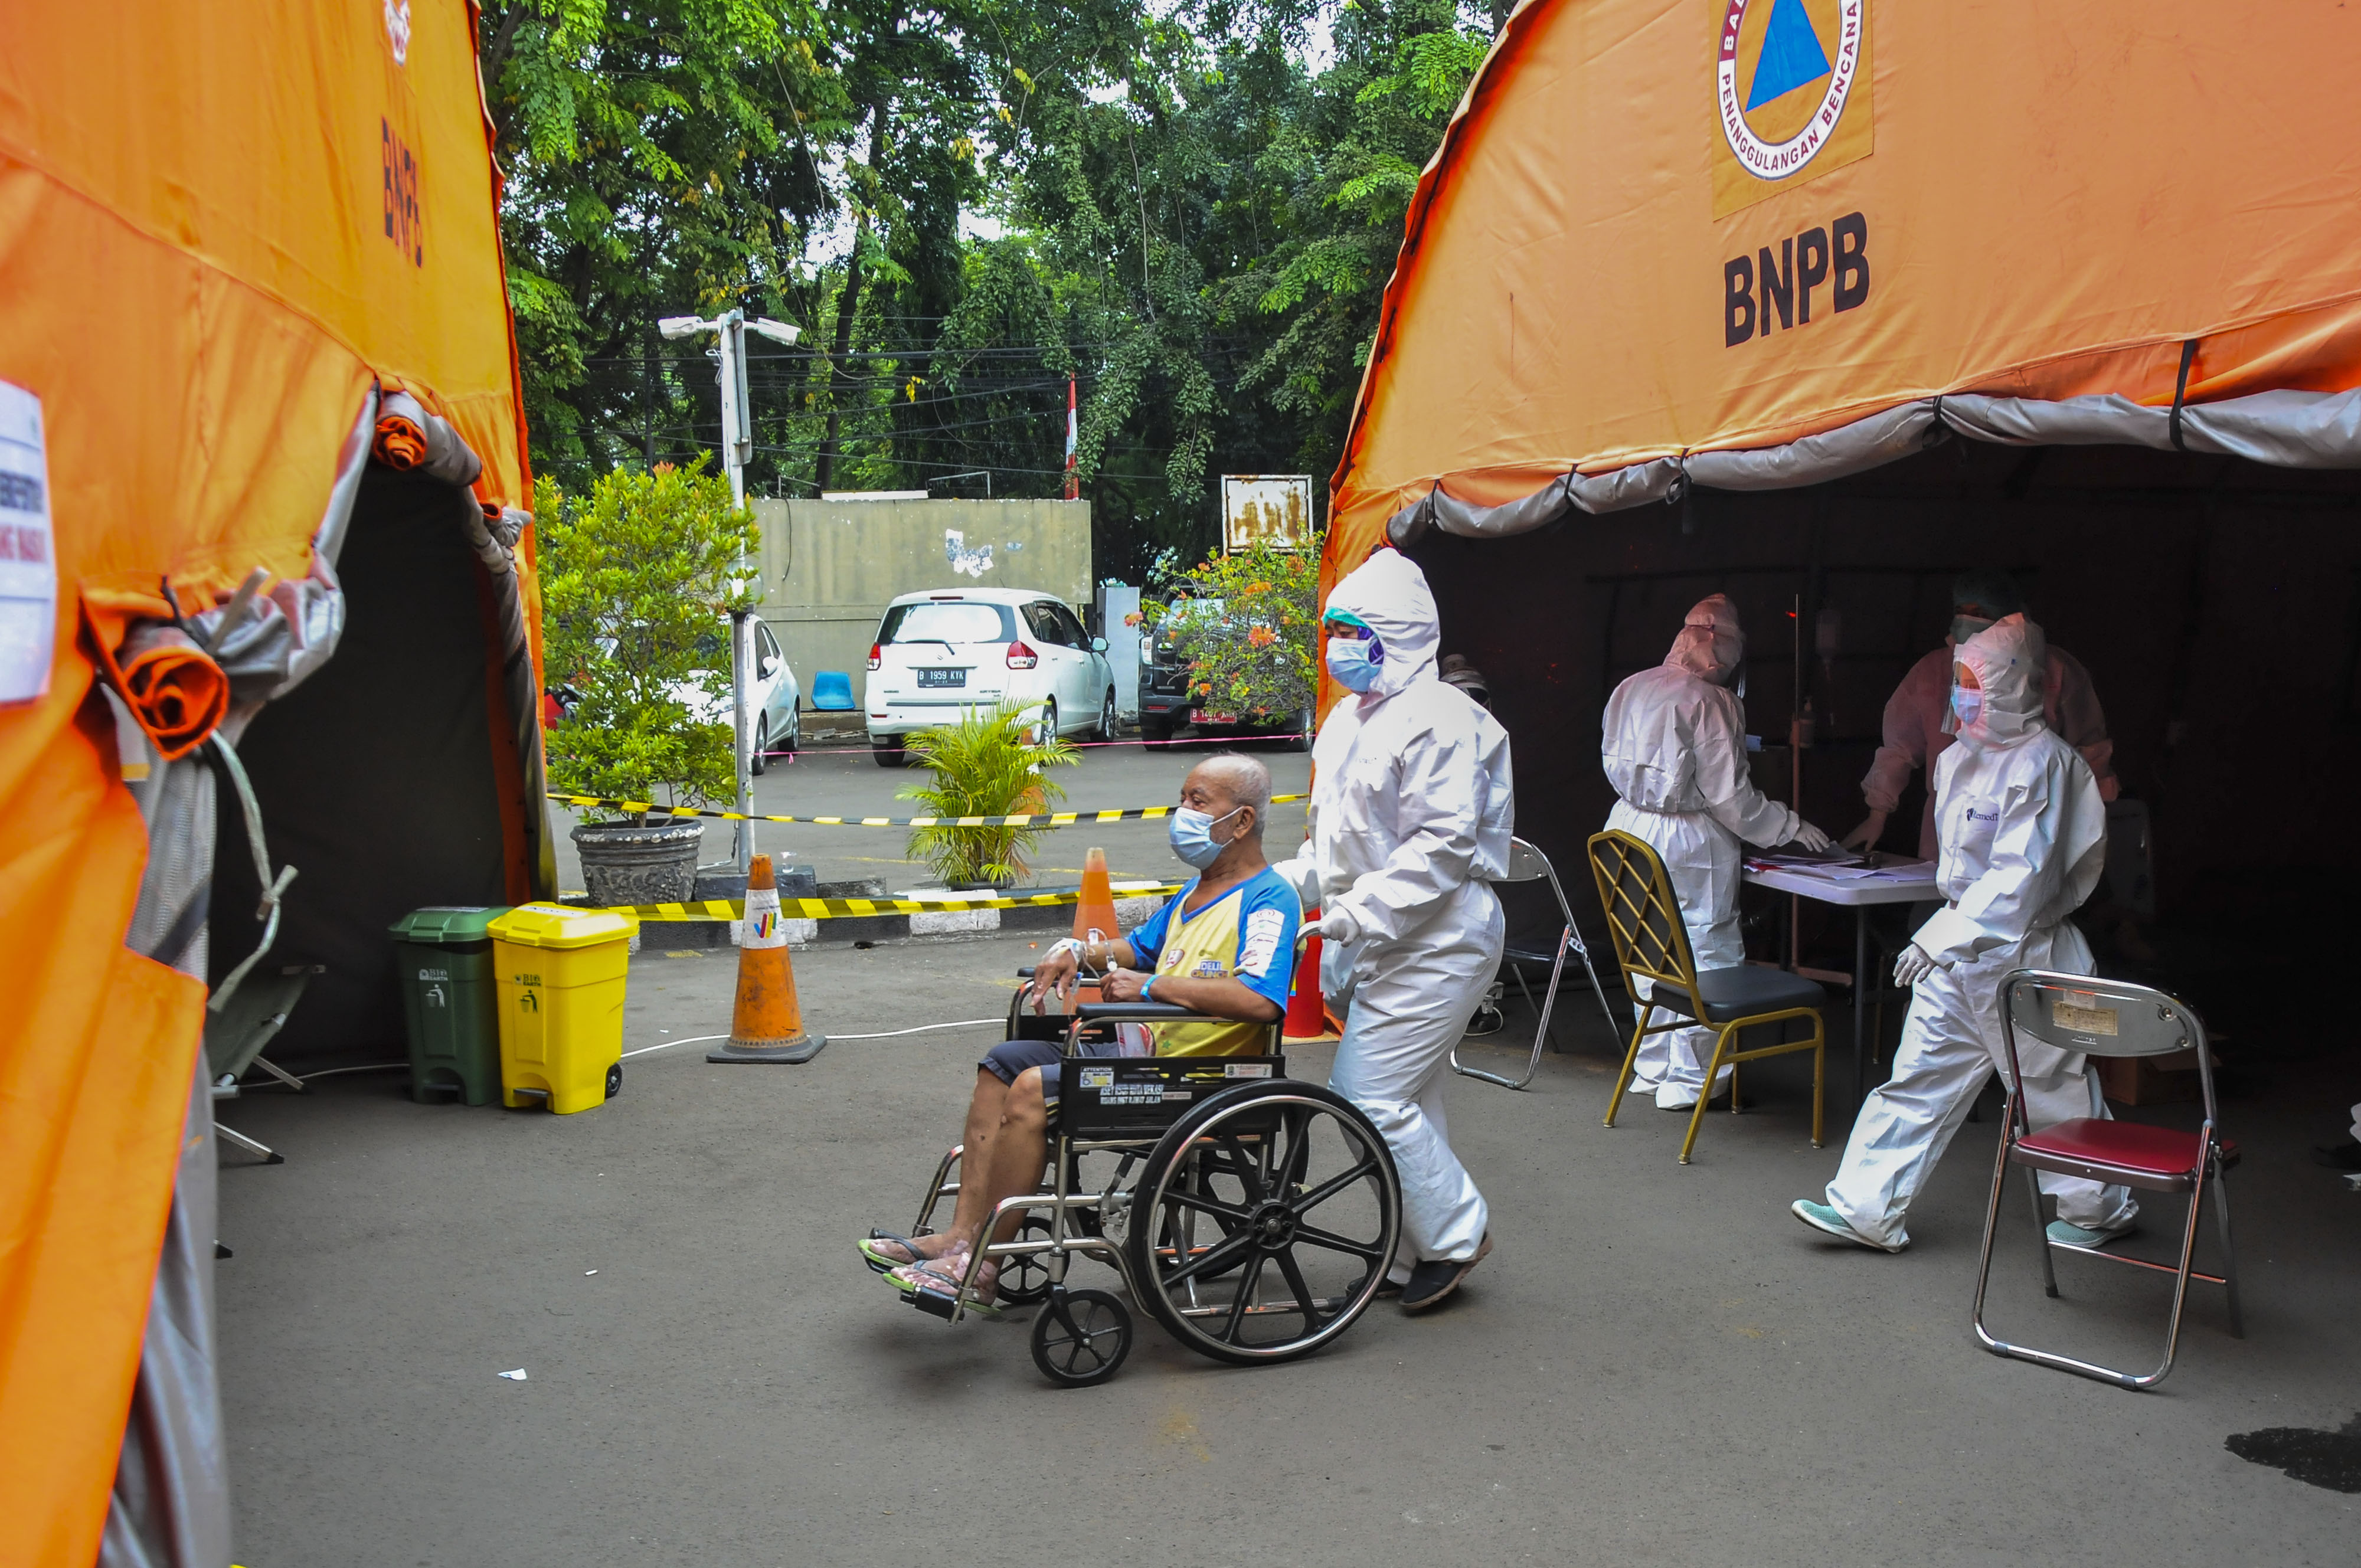 Petugas mengantar pasien ke ruang IGD (Instalasi Gawat Darurat) tambahan di RSUD Bekasi, Jawa Barat,/Fakhri Hermansyah/ANTARA FOTO